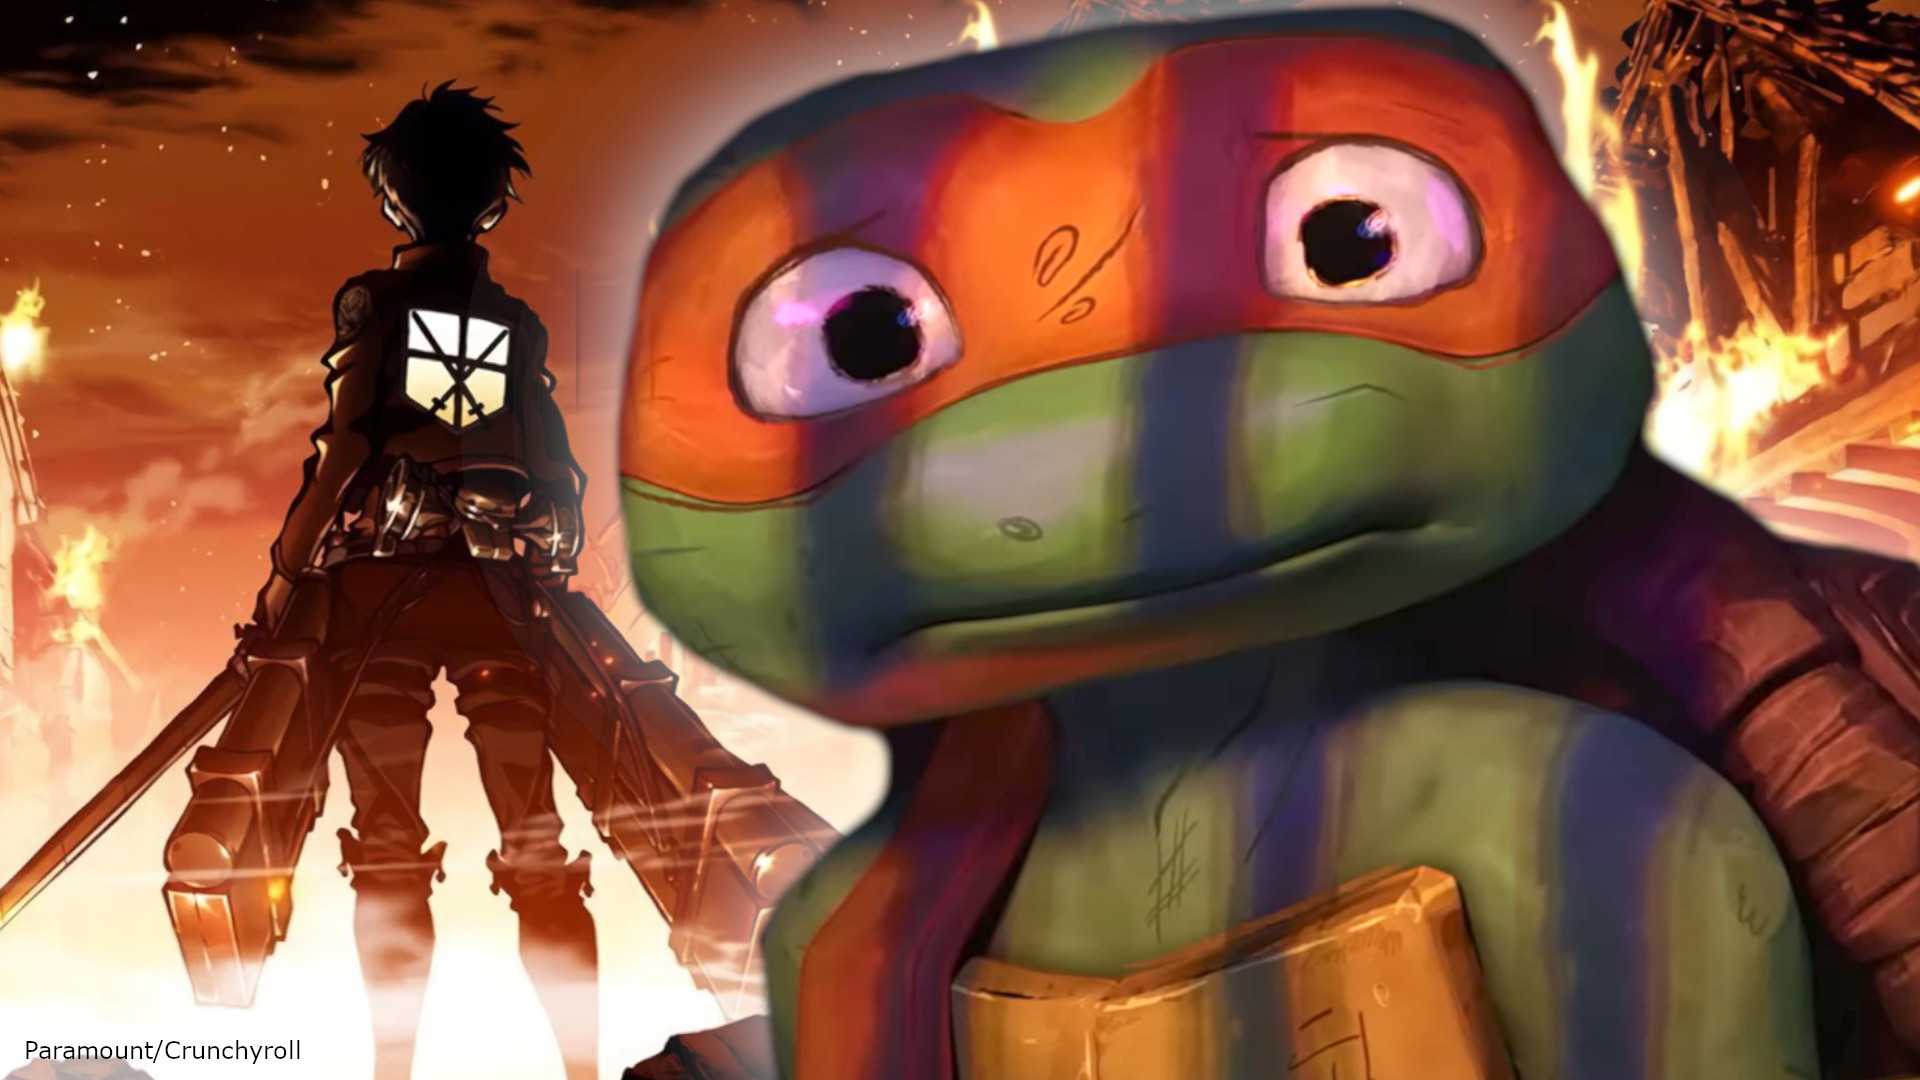 Teenage Mutant Ninja Turtles movie’s Attack on Titan moment explained